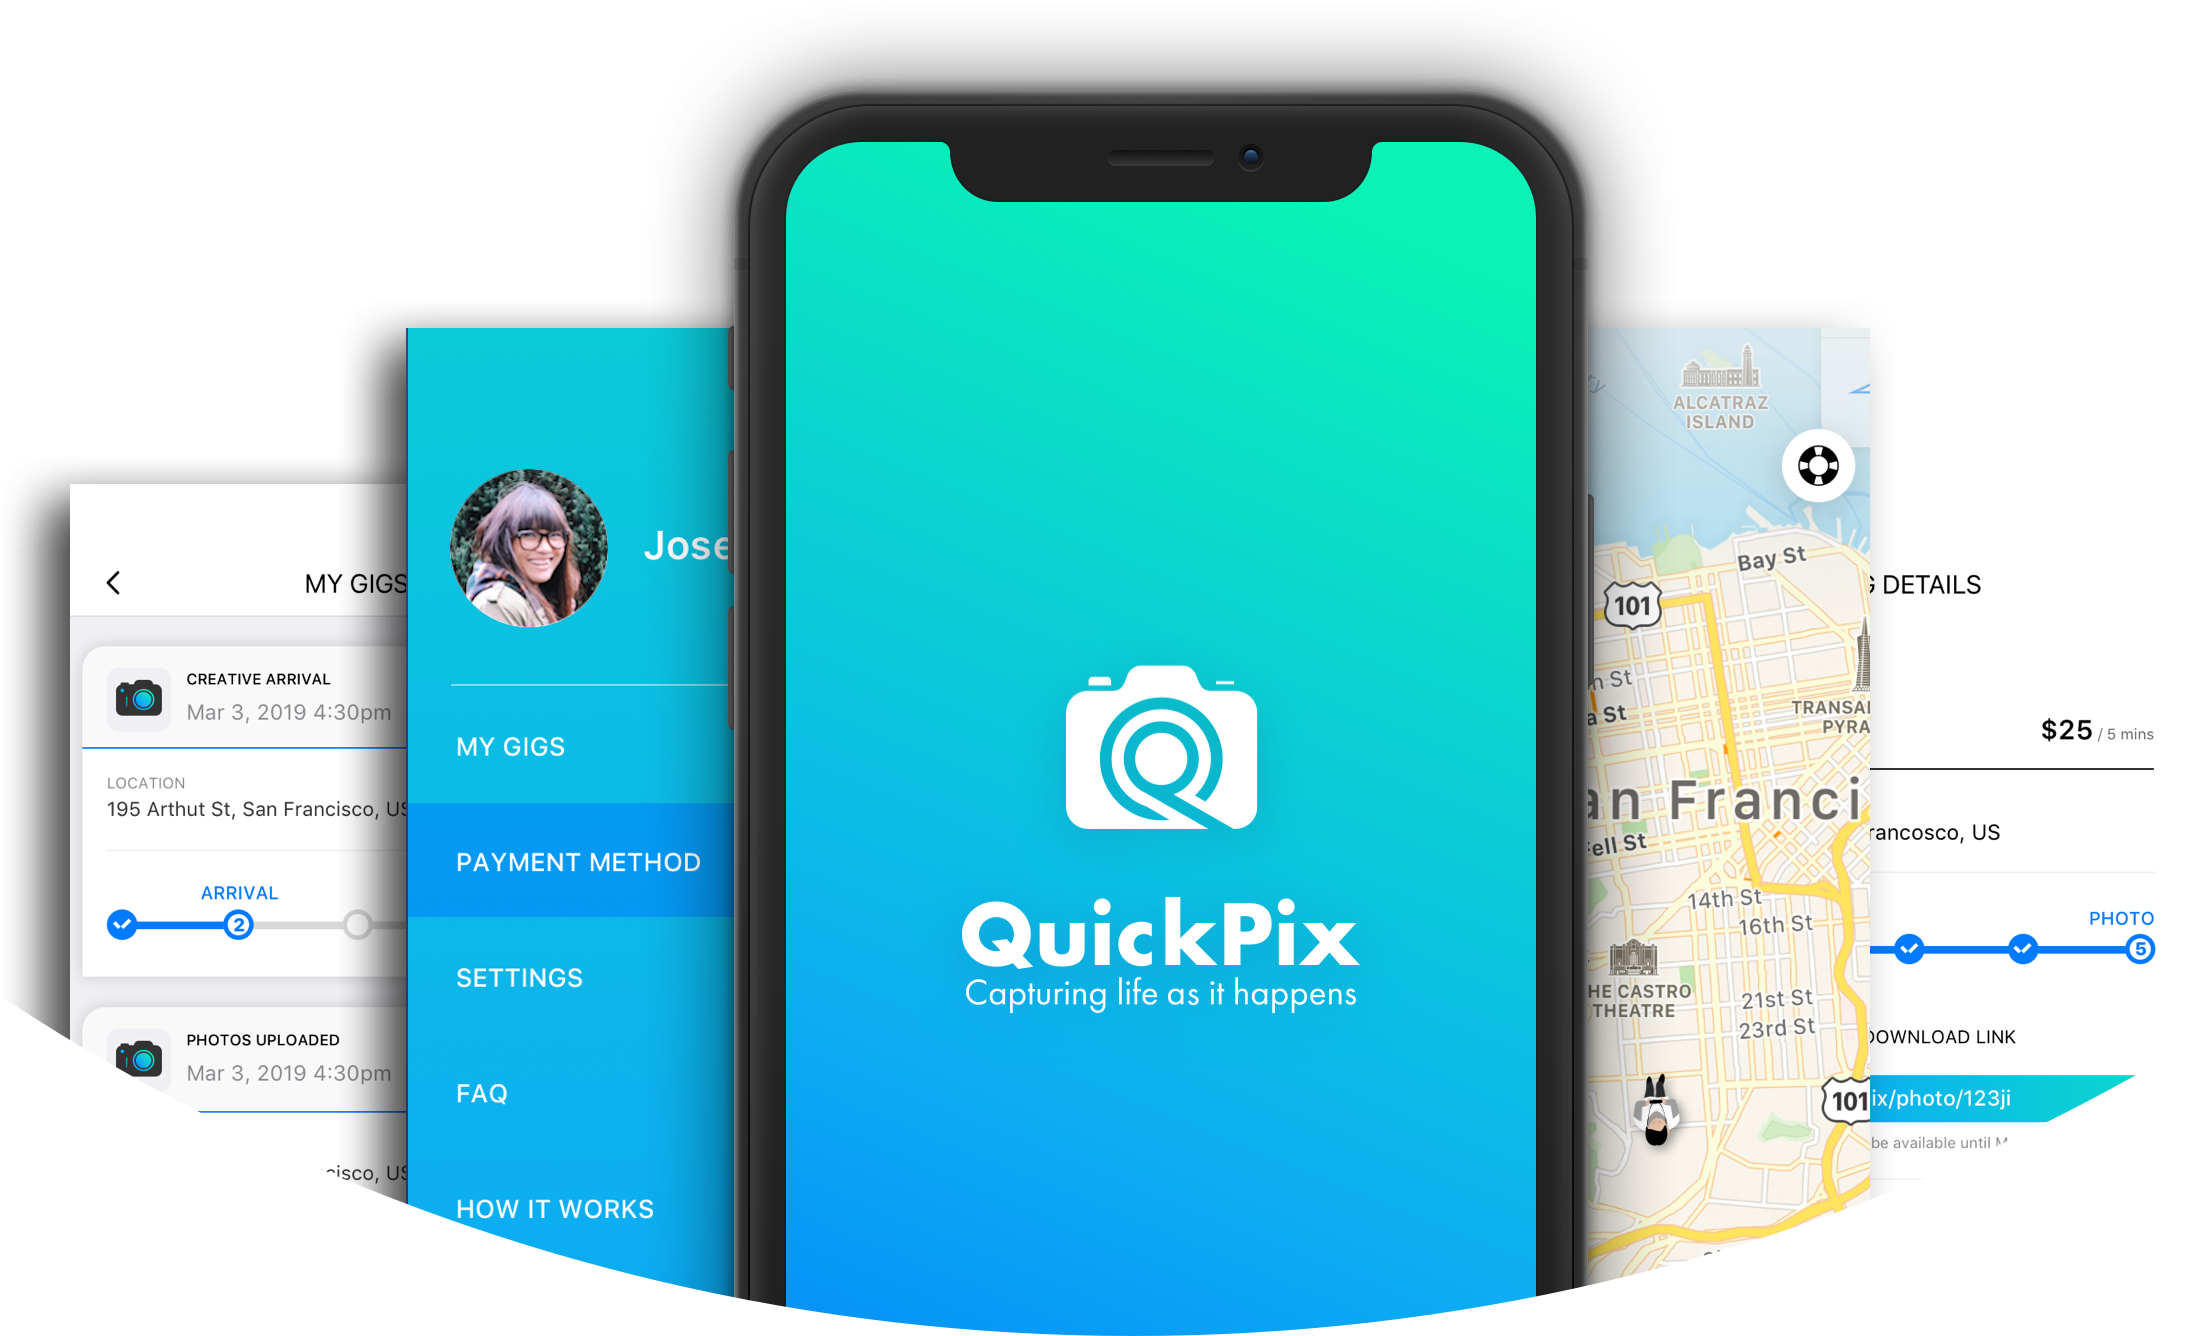 QuickPix